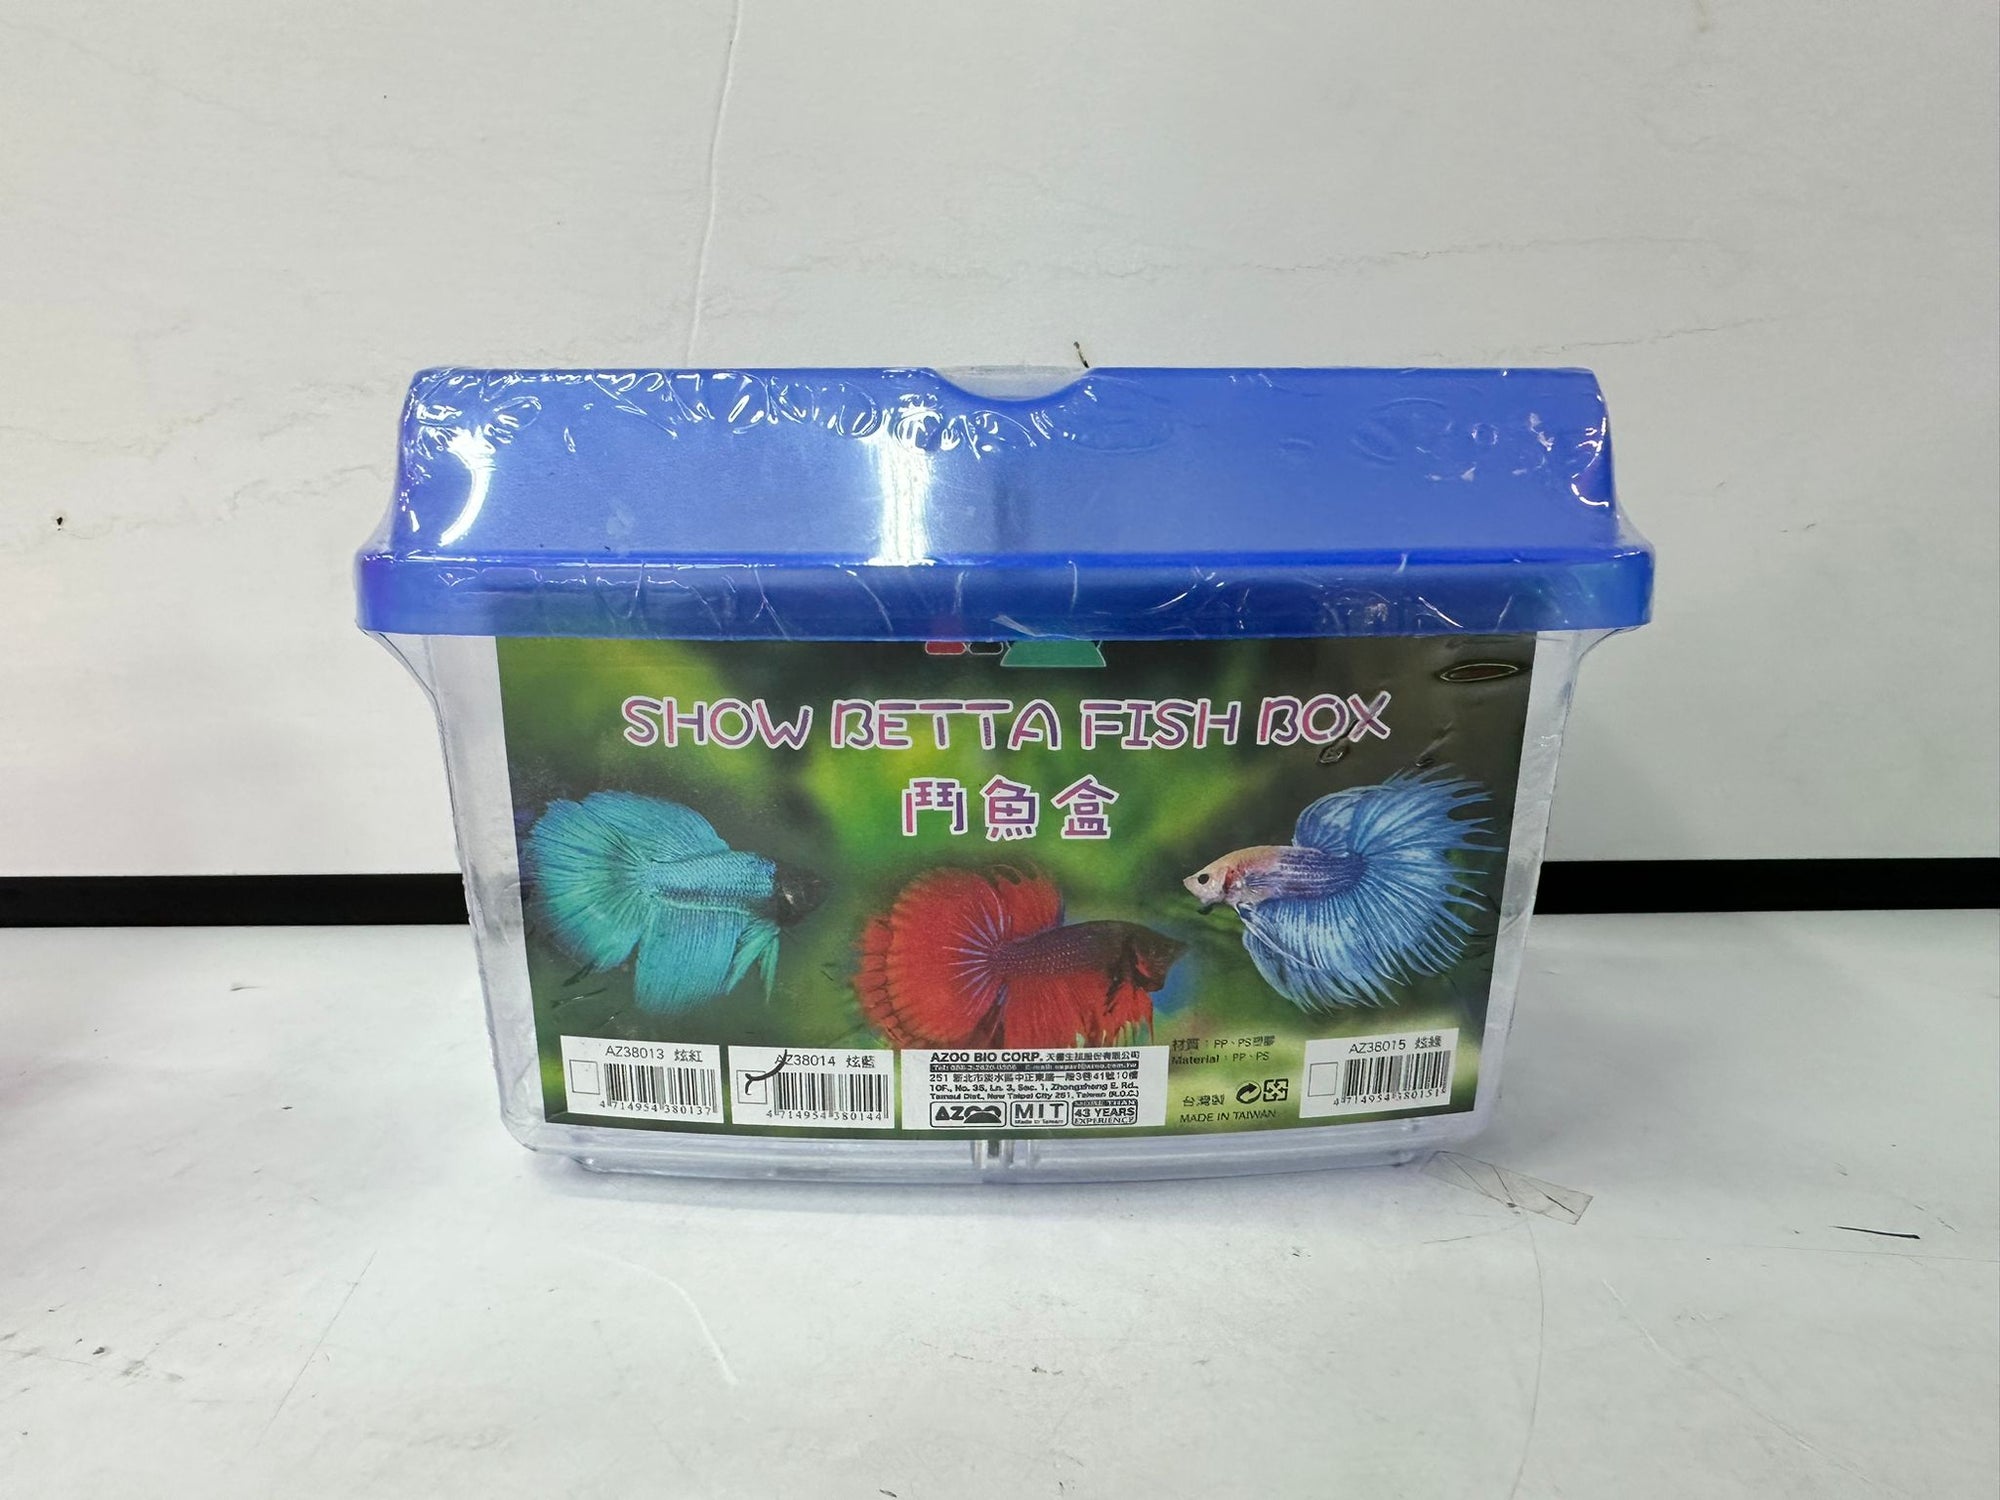 Azoo Show Betta Fish Box (Options Available)